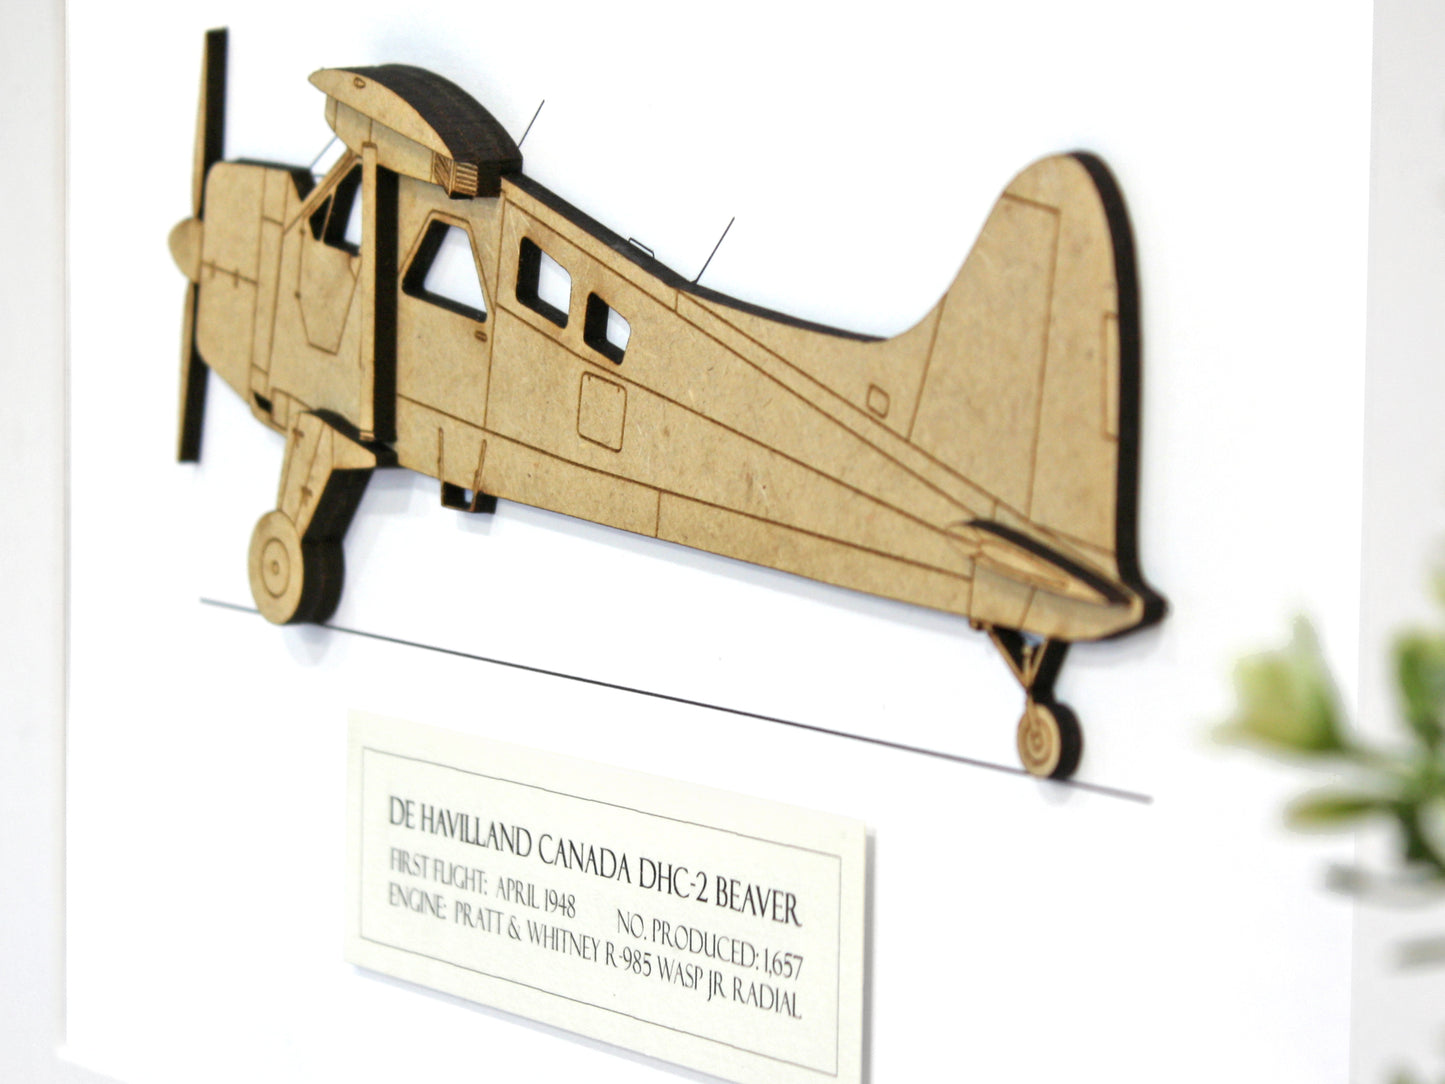 DHC-2 Beaver aviation art